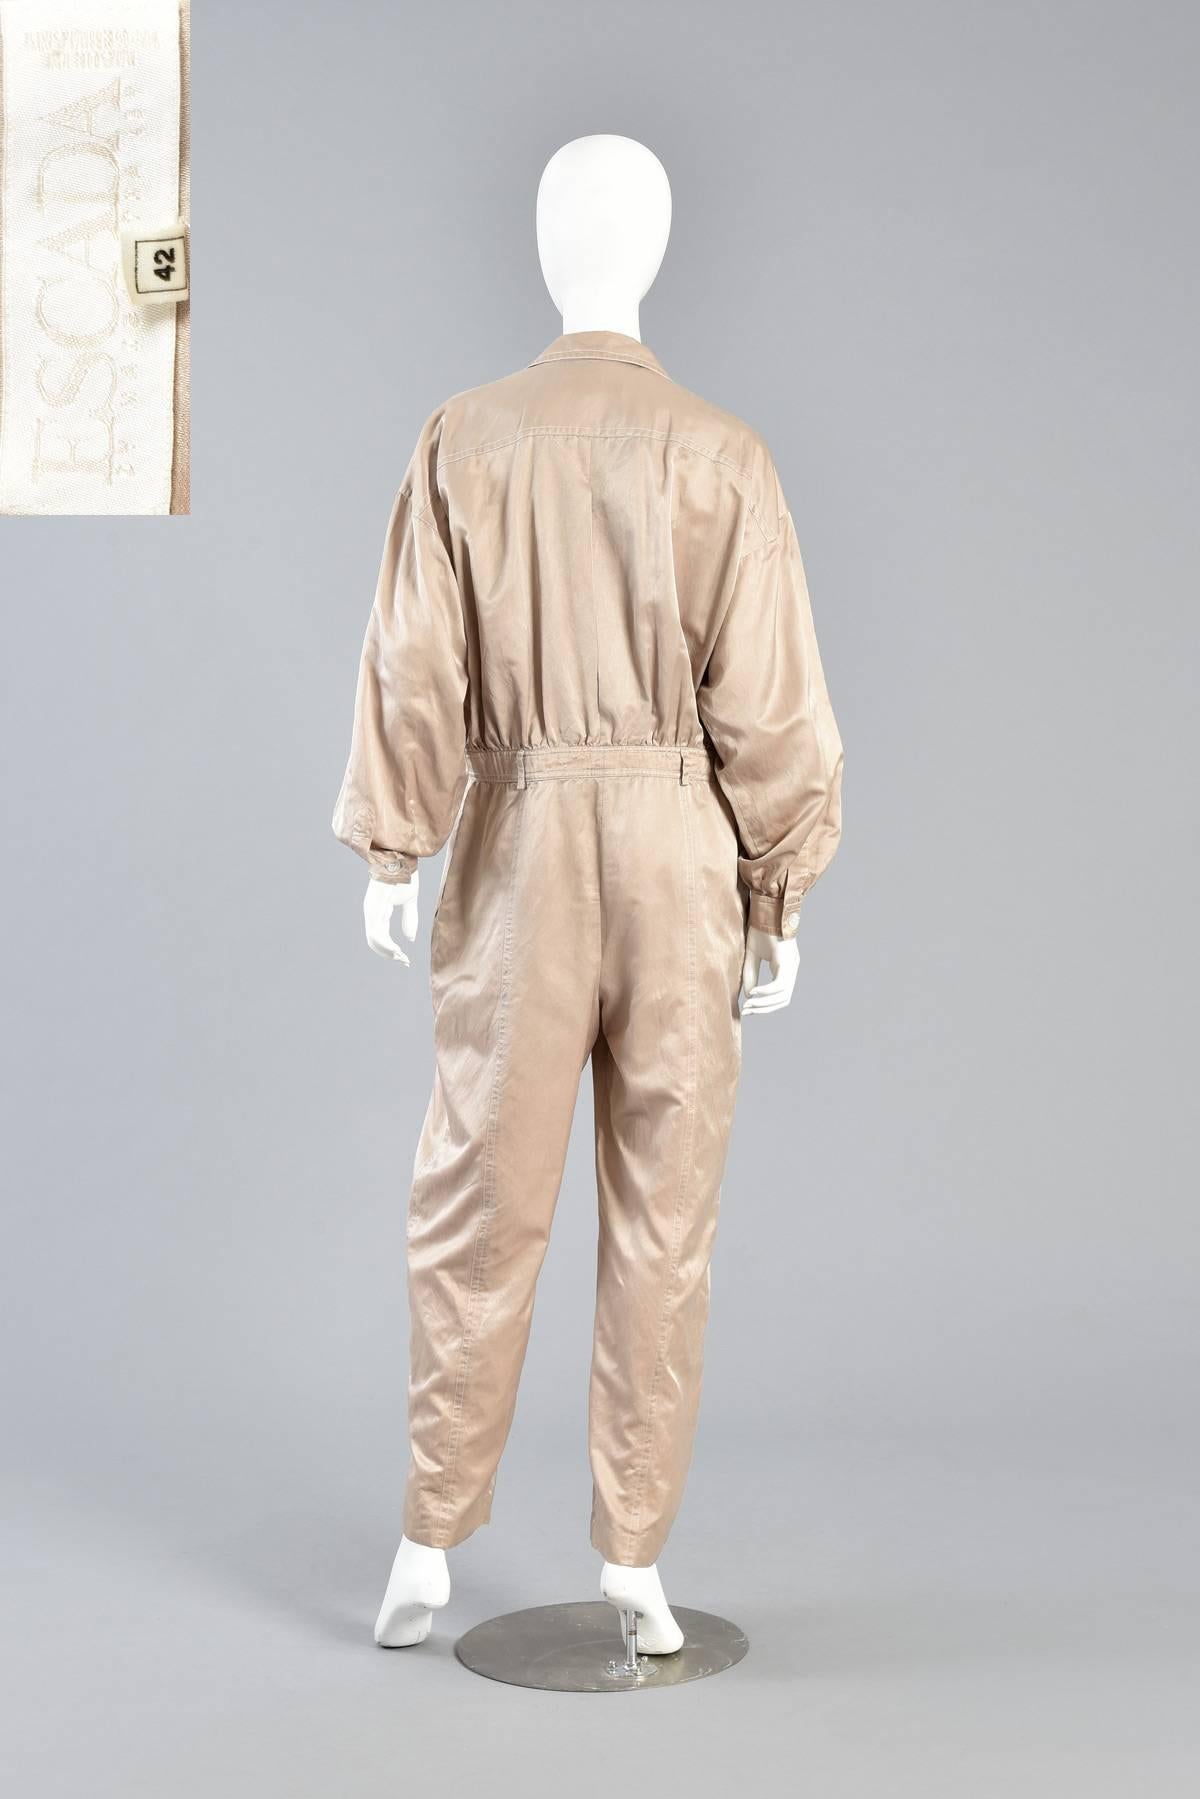 Minimalist Escada Menswear-Look Silk Flight Suit & Cotton Jumpsuit For Sale 4